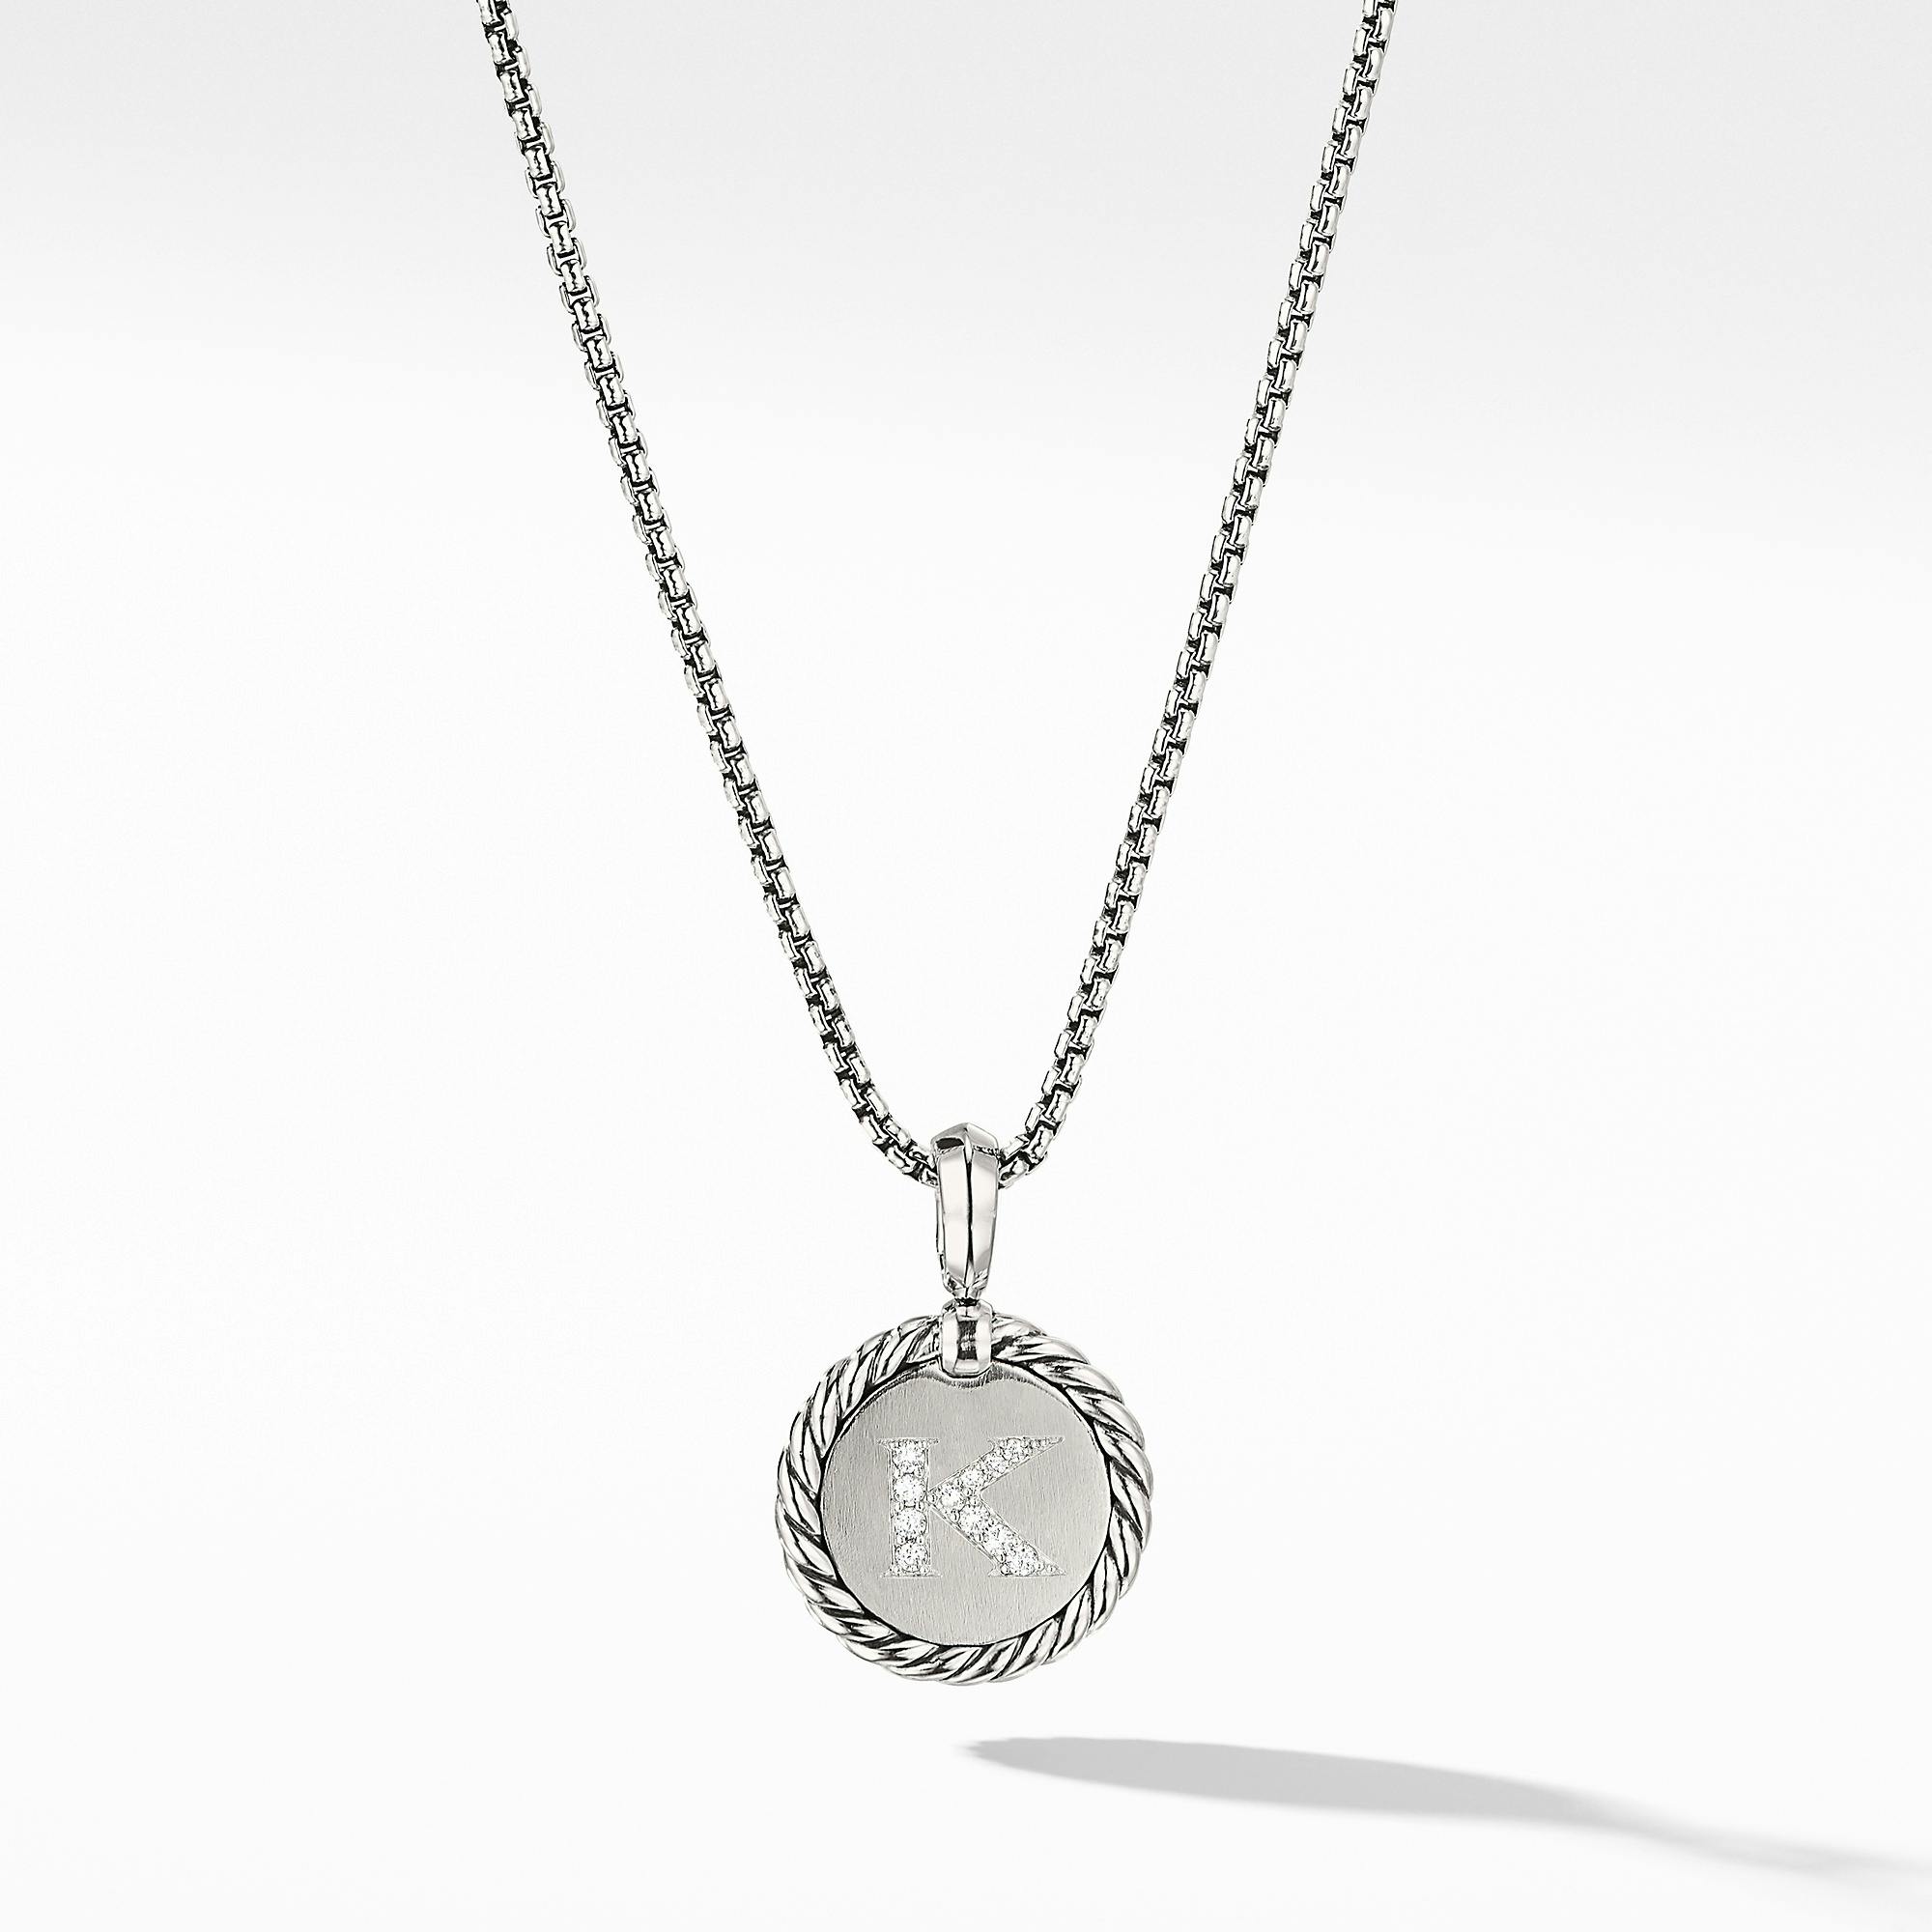 David Yurman "K" initial Charm Necklace with Diamonds